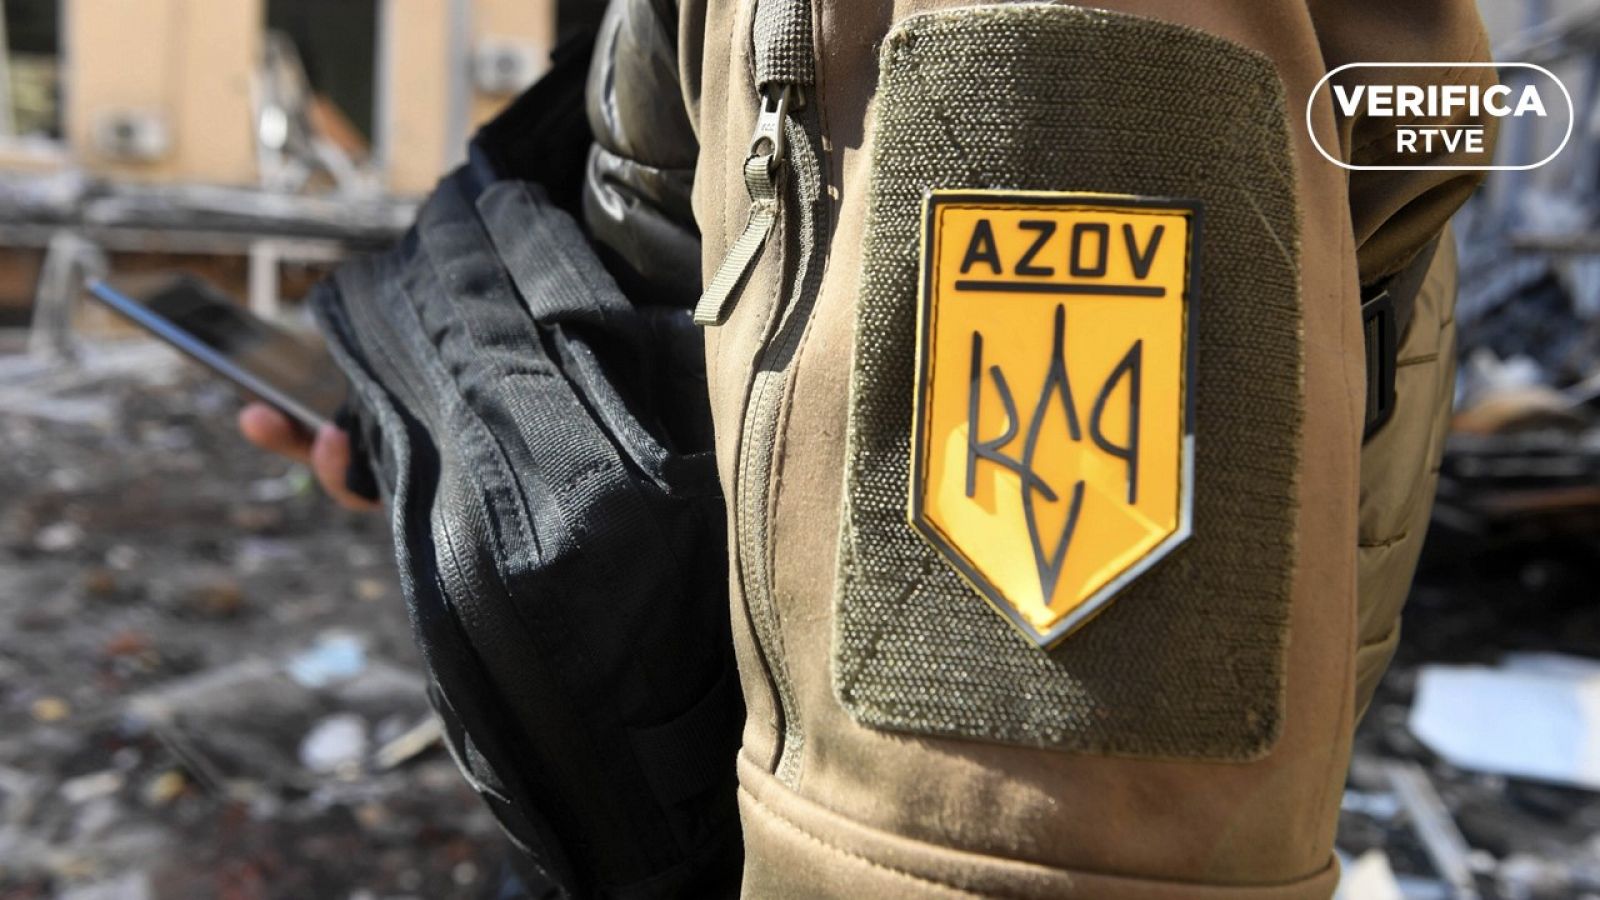 Imagen de un soldado del Batallón Azov en Jarkov, con el sello blanco de VerificaRTVE